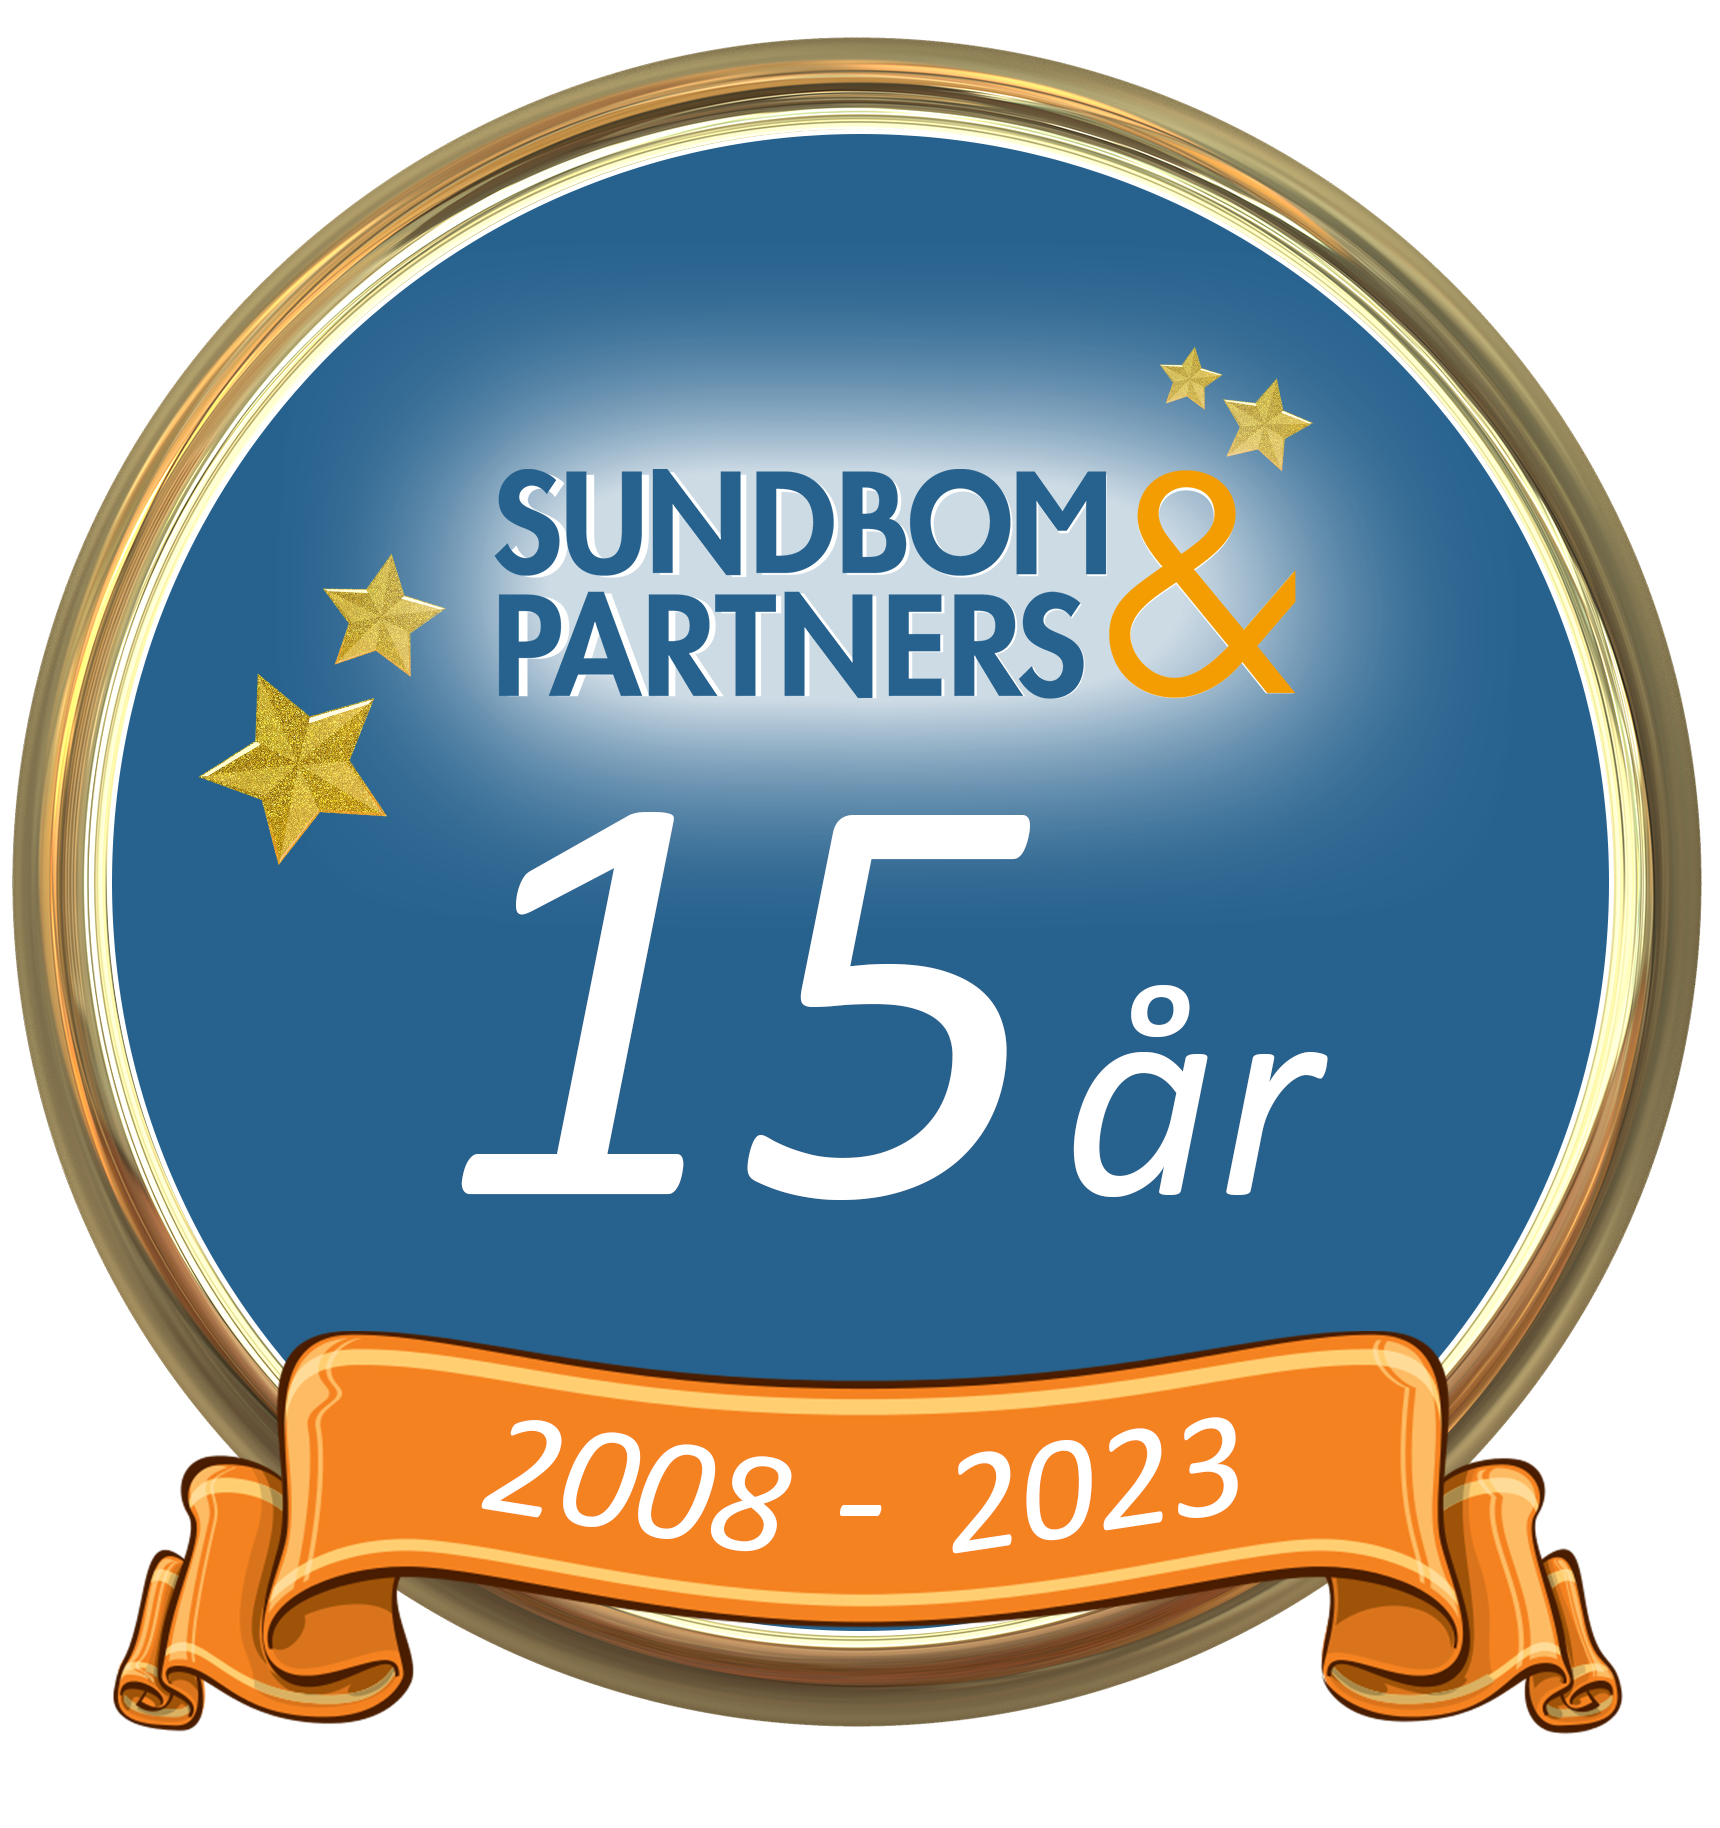 Sundbom & Partners 15 år